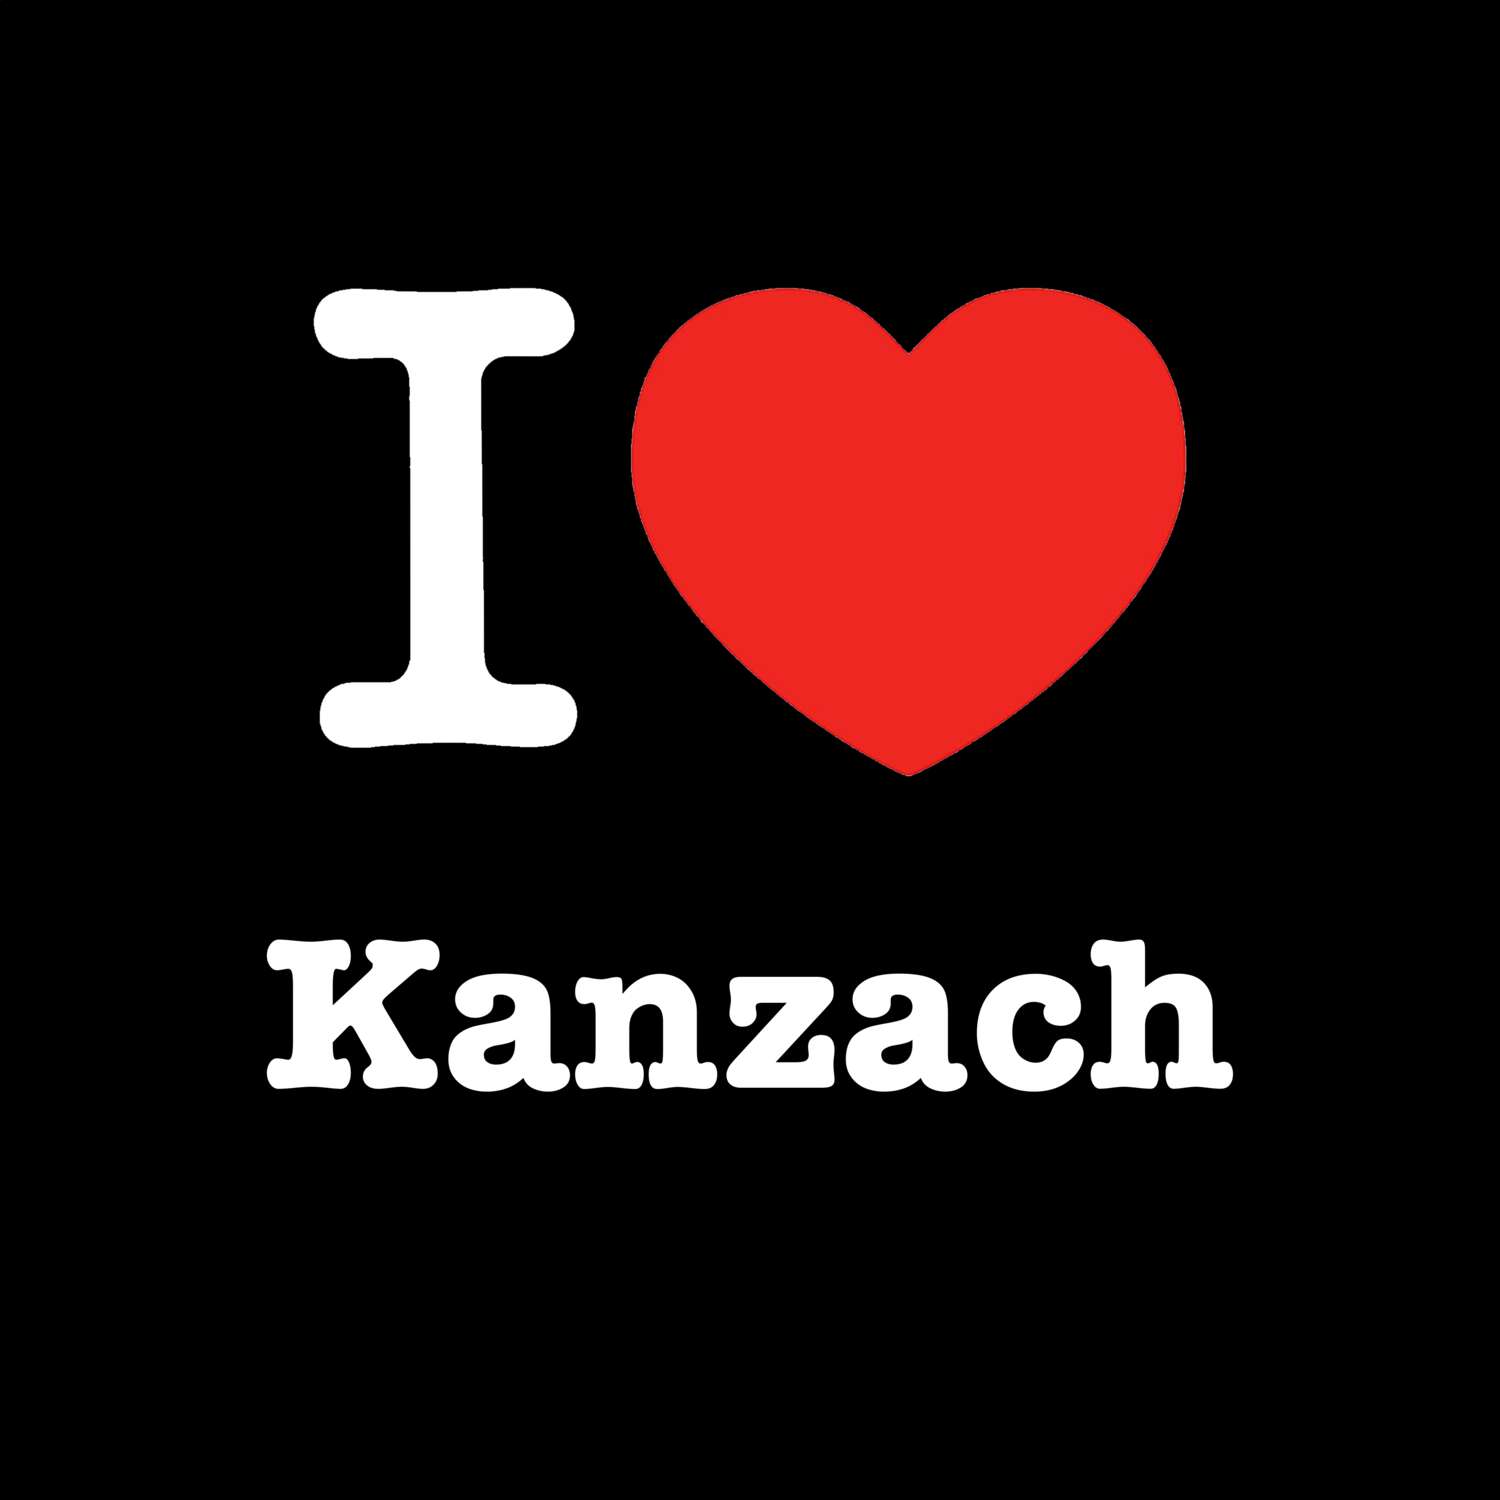 Kanzach T-Shirt »I love«